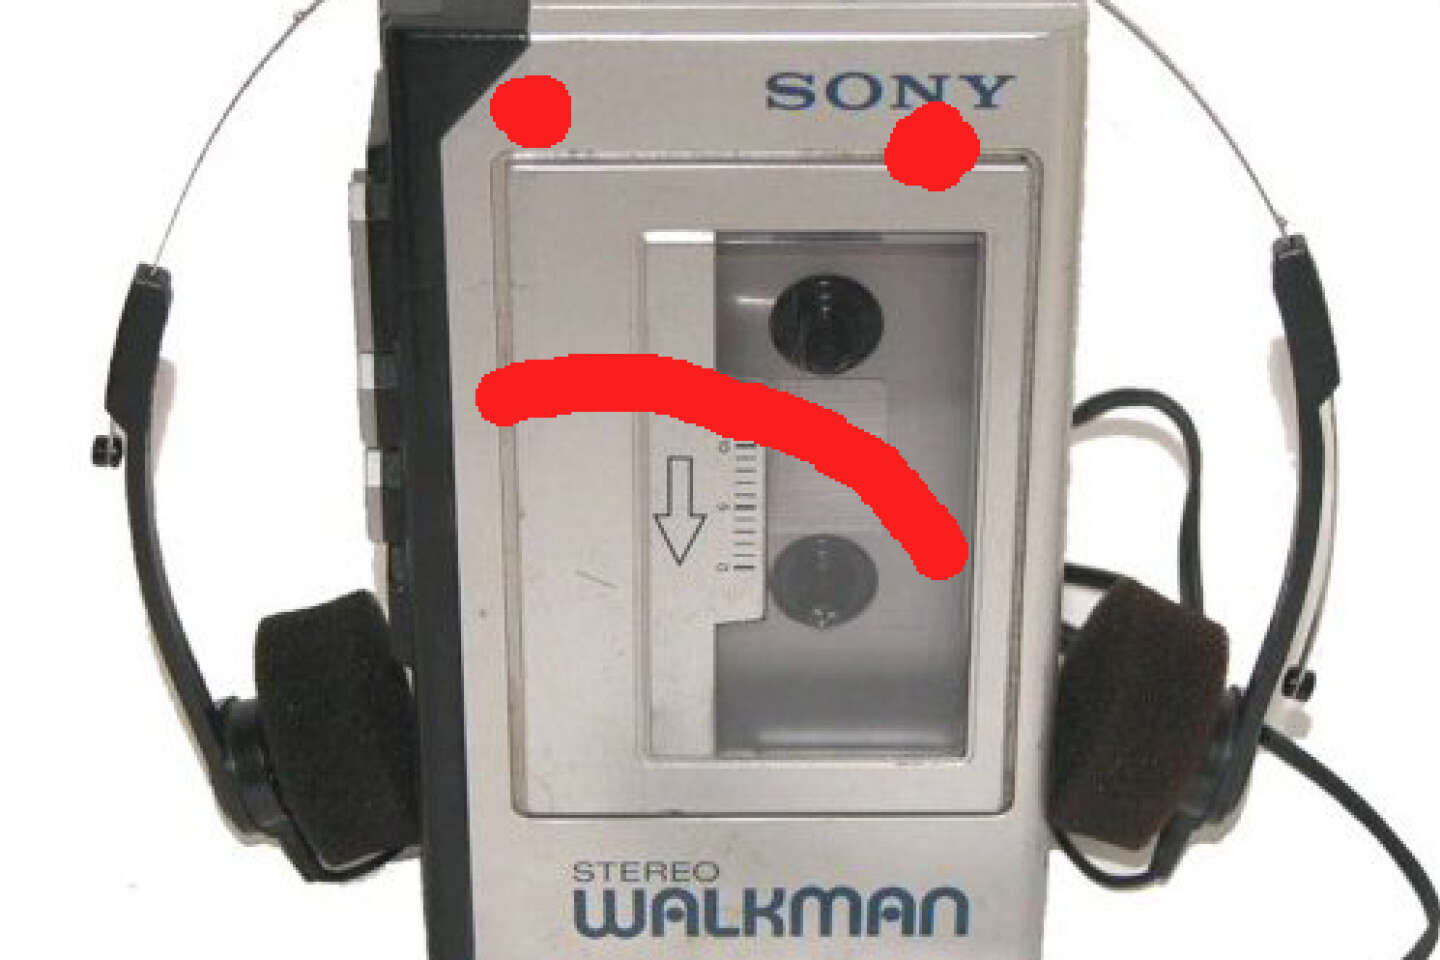 Icône de pop culture, le Walkman avance parmi des baladeurs